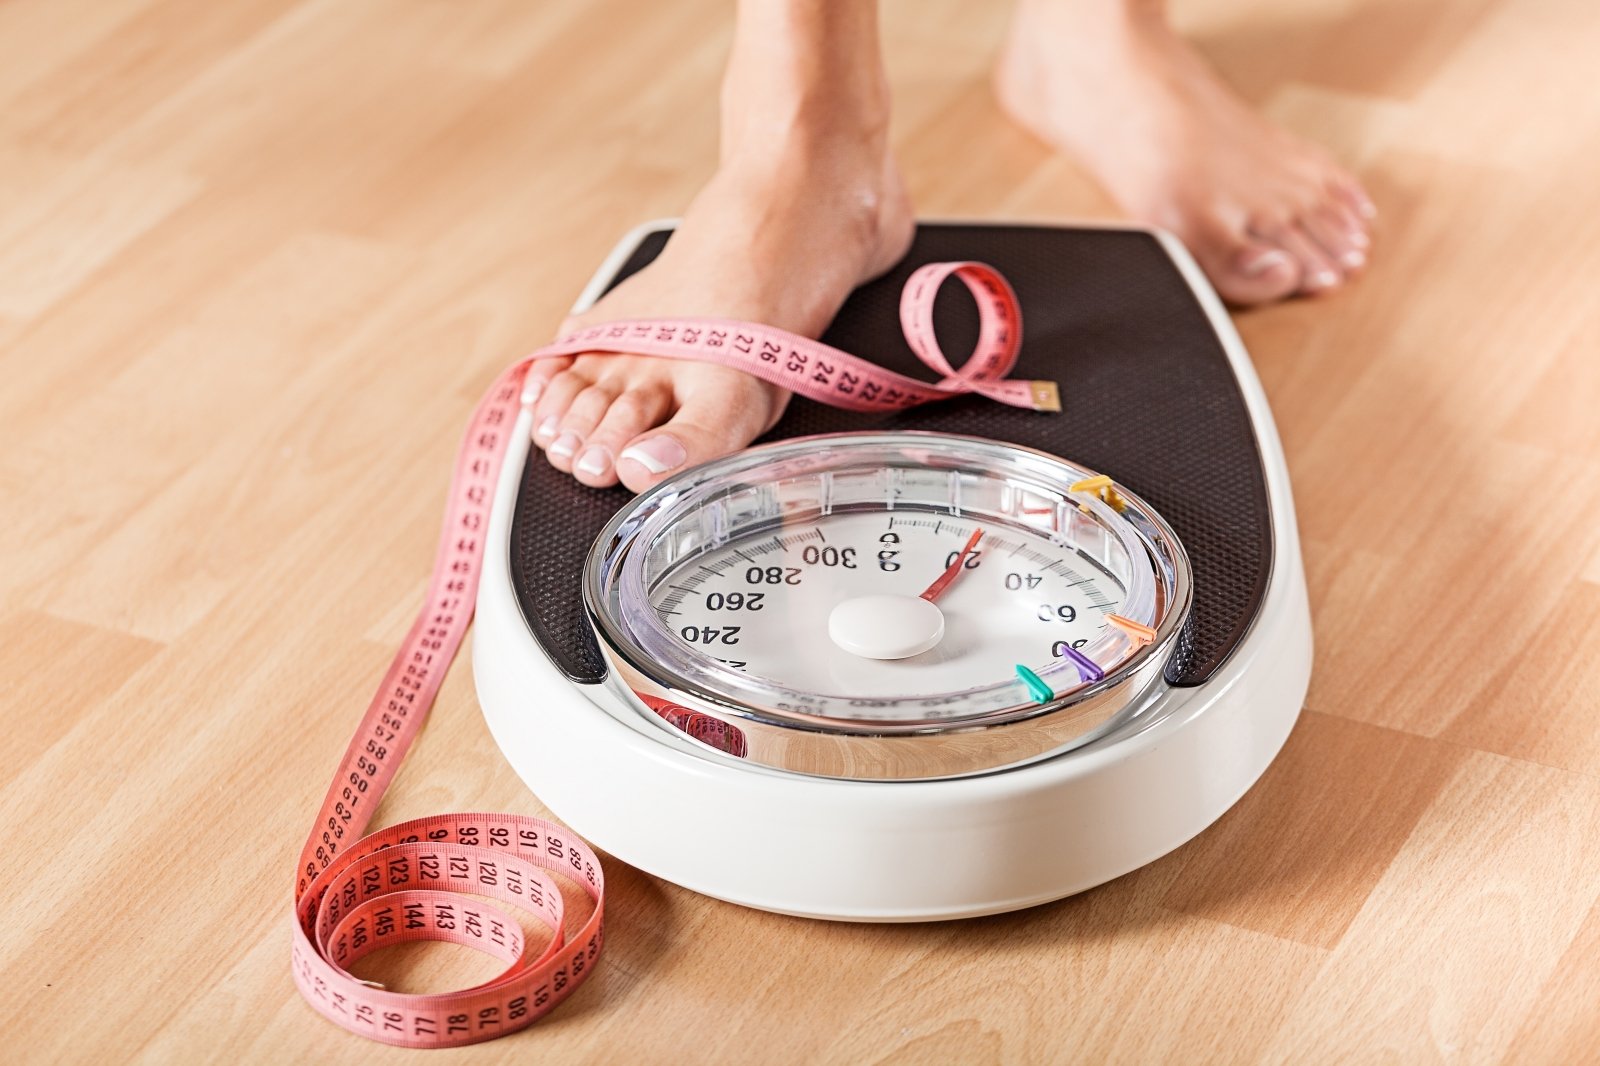 prarasti riebalus per penkias savaites 1 kg svorio netekimas per 1 savaitę